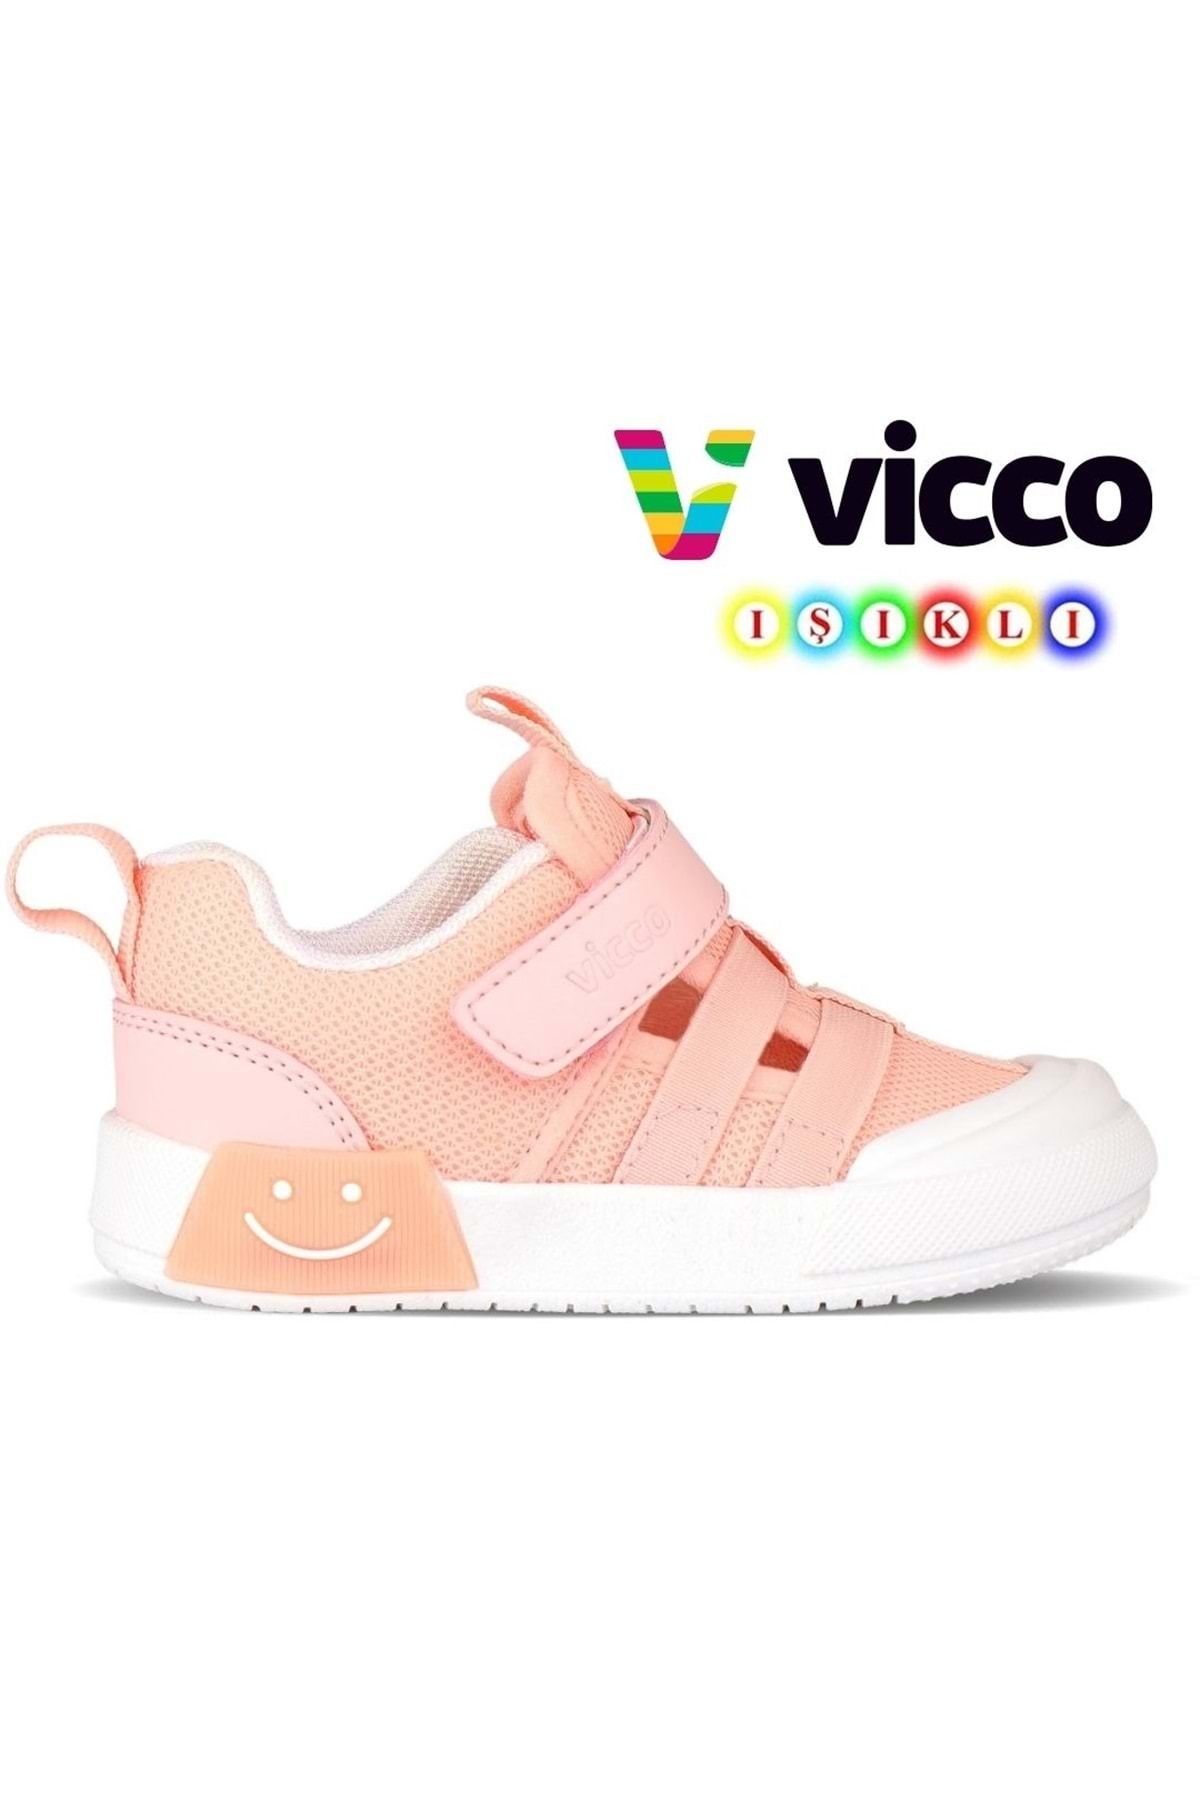 Vicco Momo Işıklı Ortopedik Çocuk Spor Ayakkabı Pudra